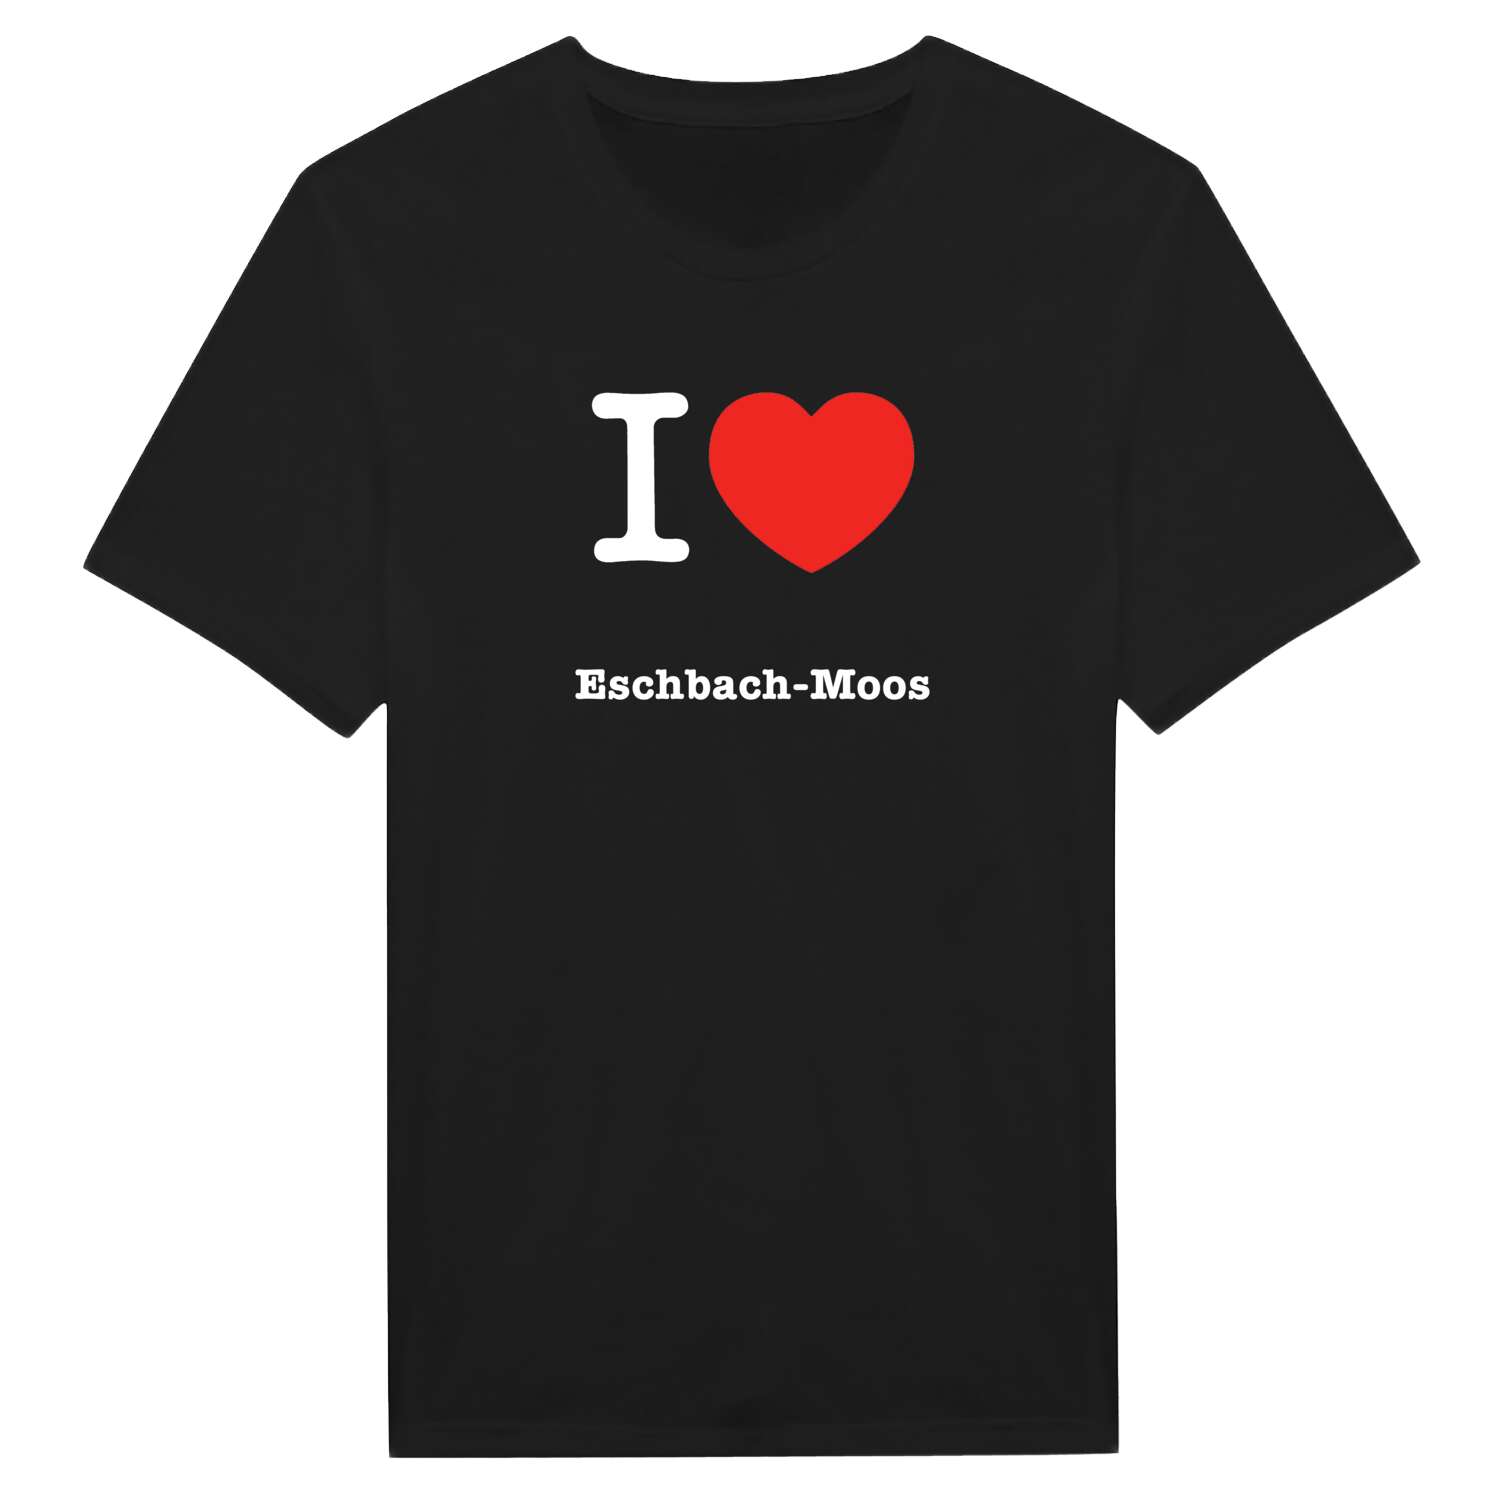 Eschbach-Moos T-Shirt »I love«